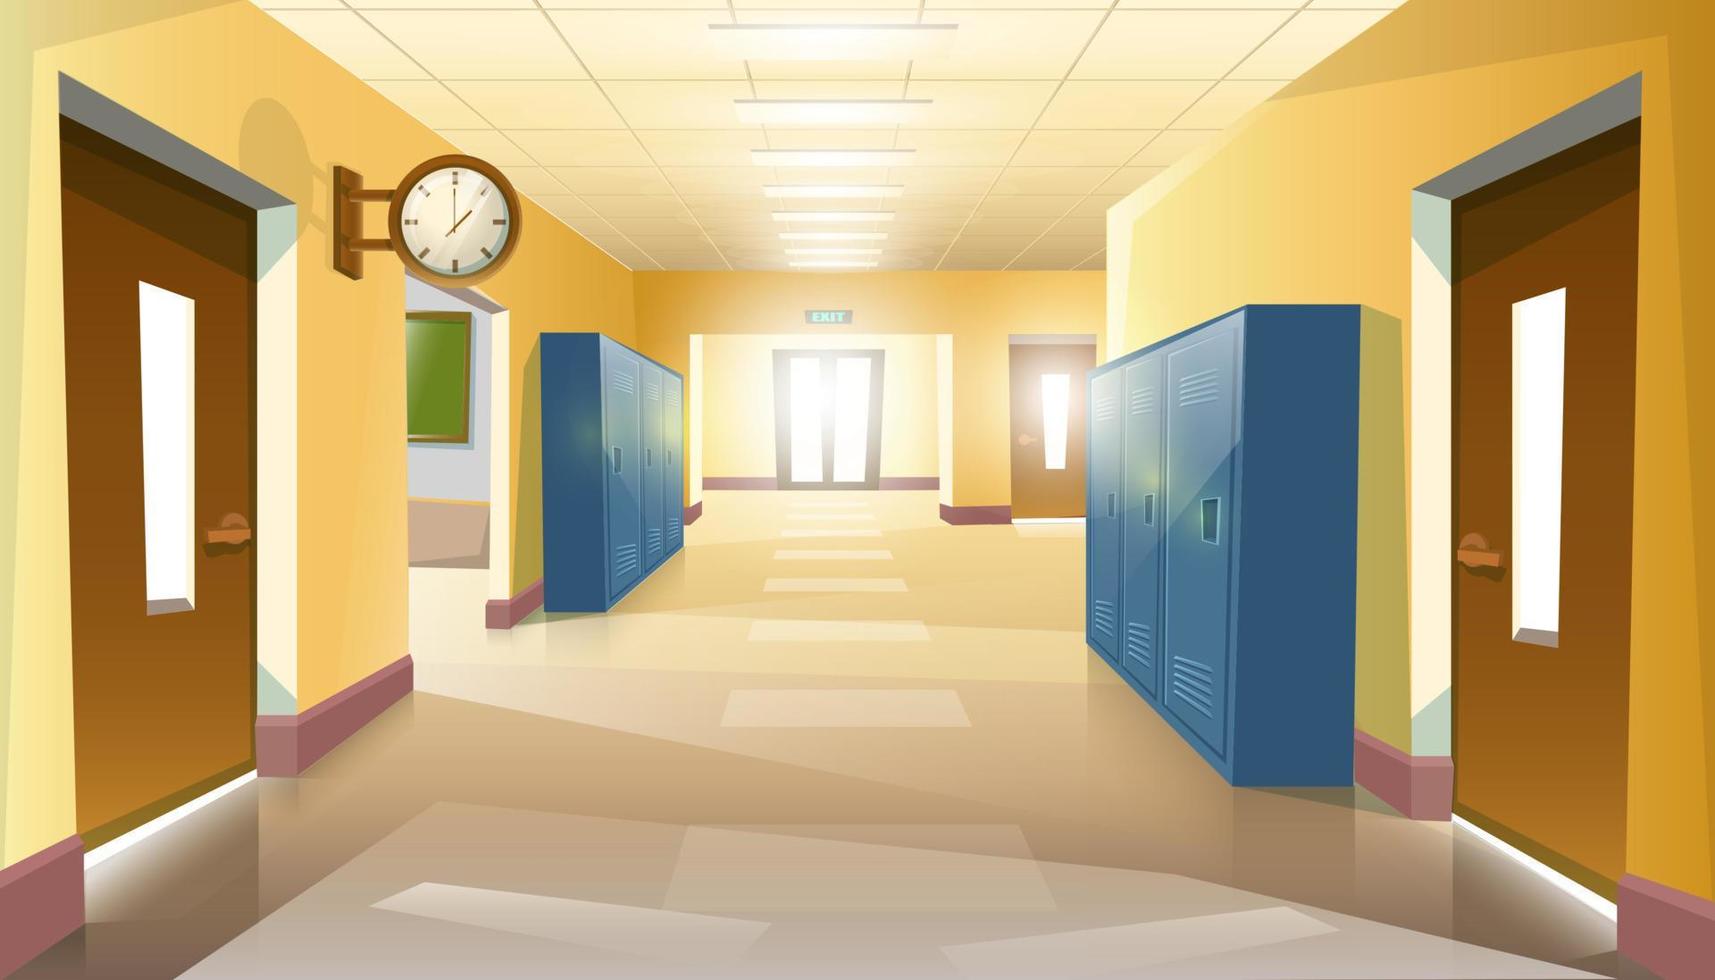 corredor de escola de estilo cartoon vetorial com portas abertas de aulas com mesas e cadeiras de estudo. vetor